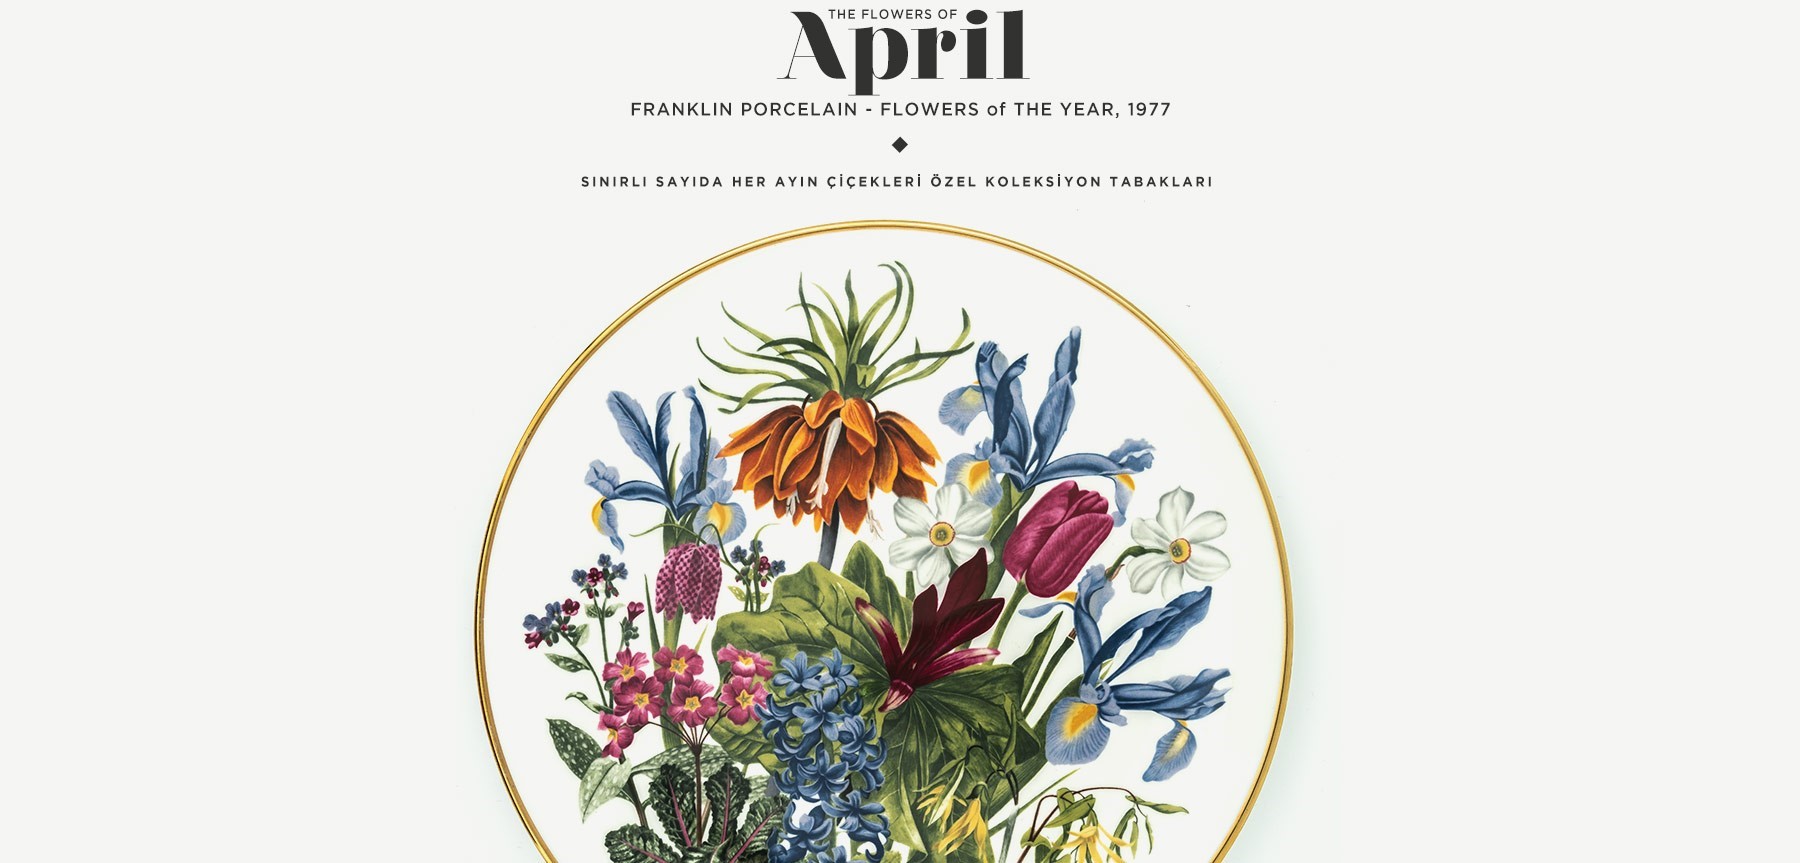 nisan'da açan çiçekler the flowers of april'in resmi